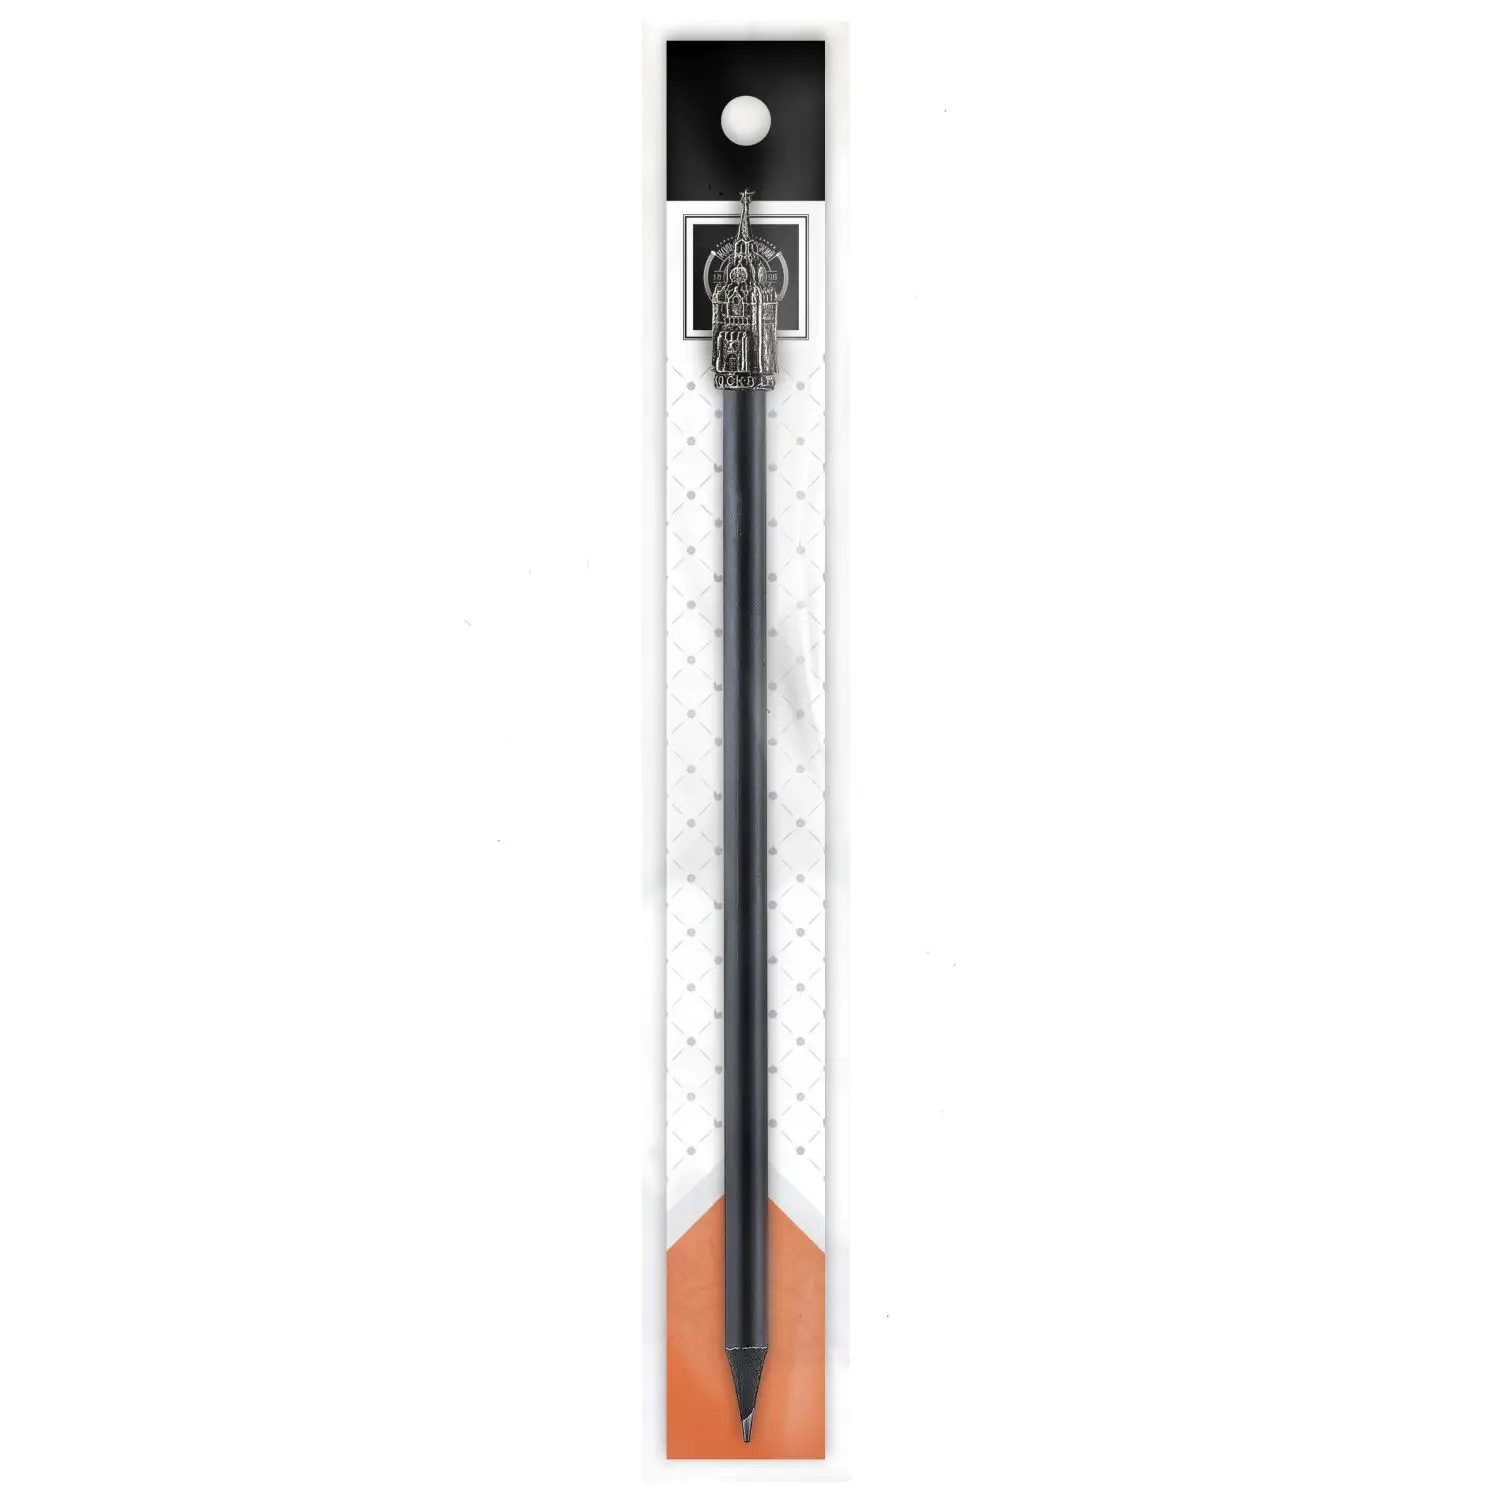 Карандаш Спасская башня мельхиоровый полированный карандаш с литым элементом спасская башня латунный в футляре